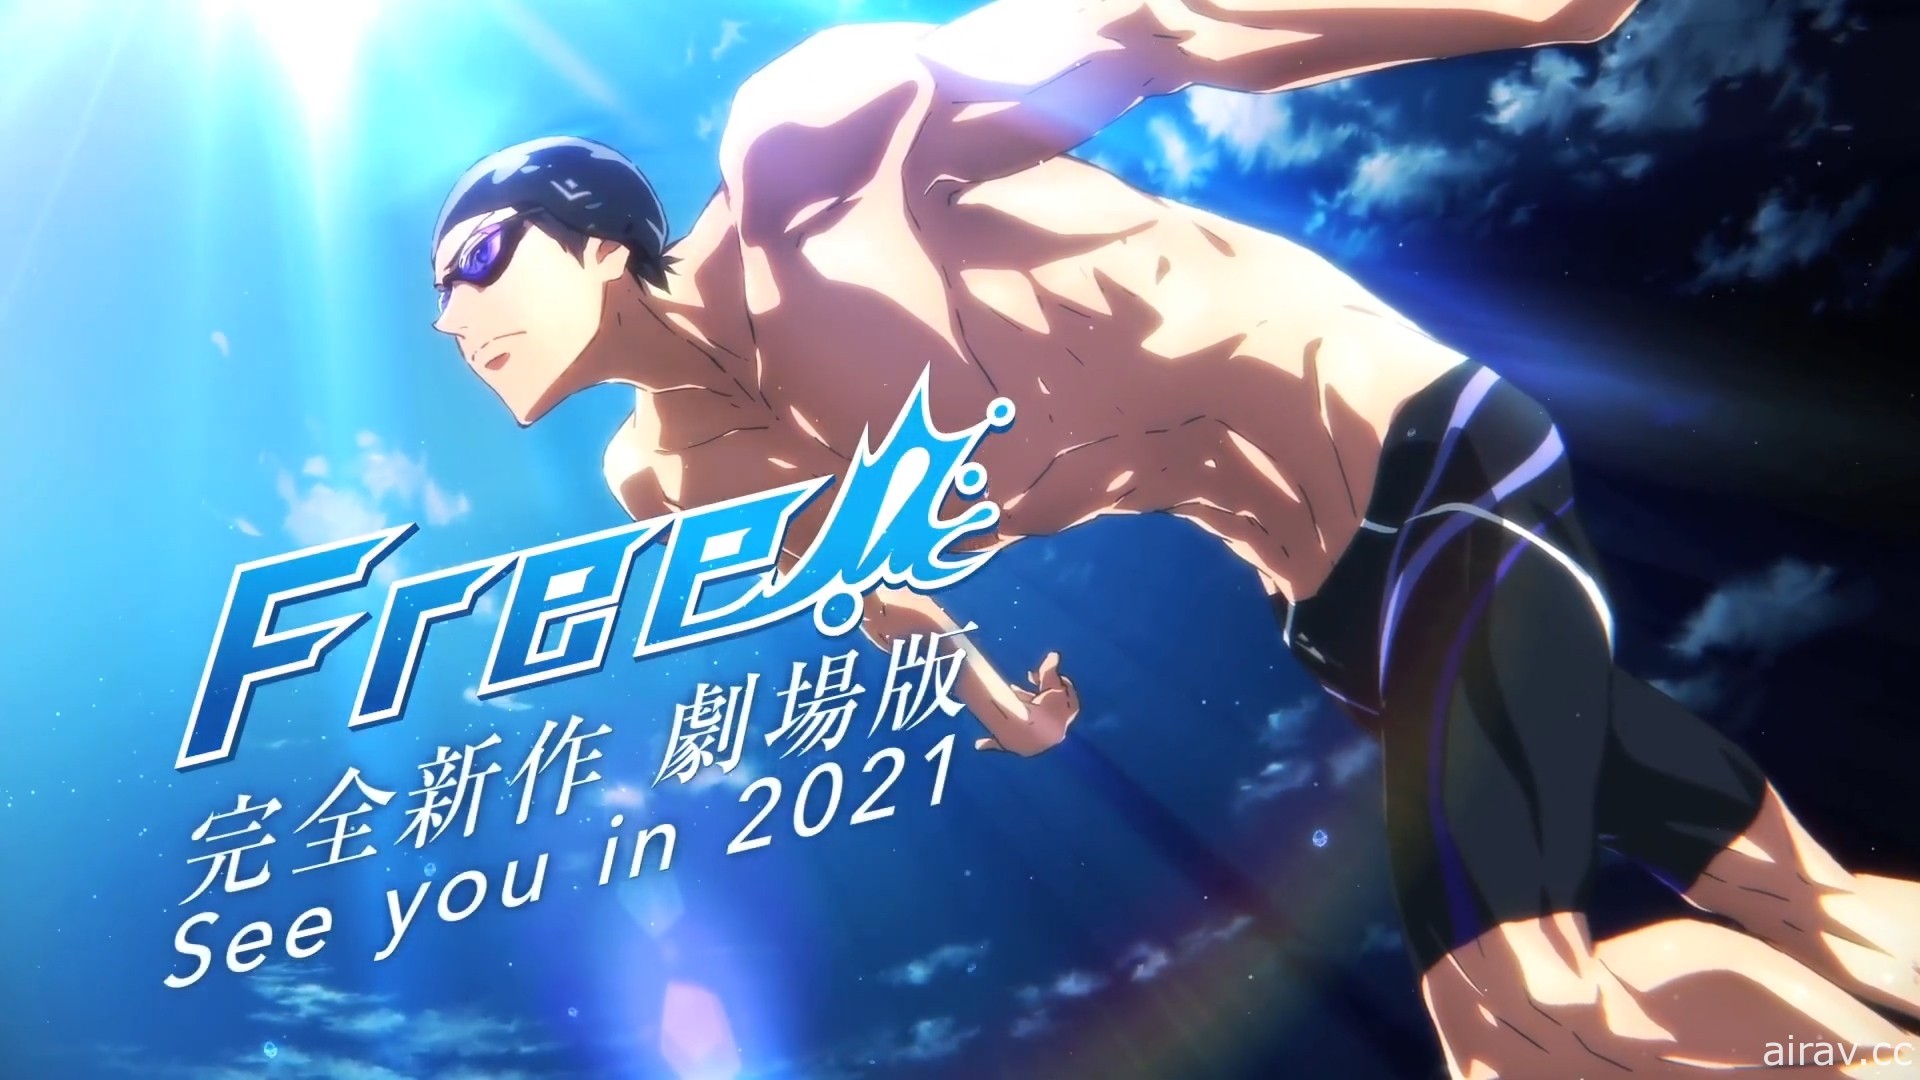 《FREE! 男子游泳部》将于 2021 年推出完全新作剧场版动画 前导预告释出